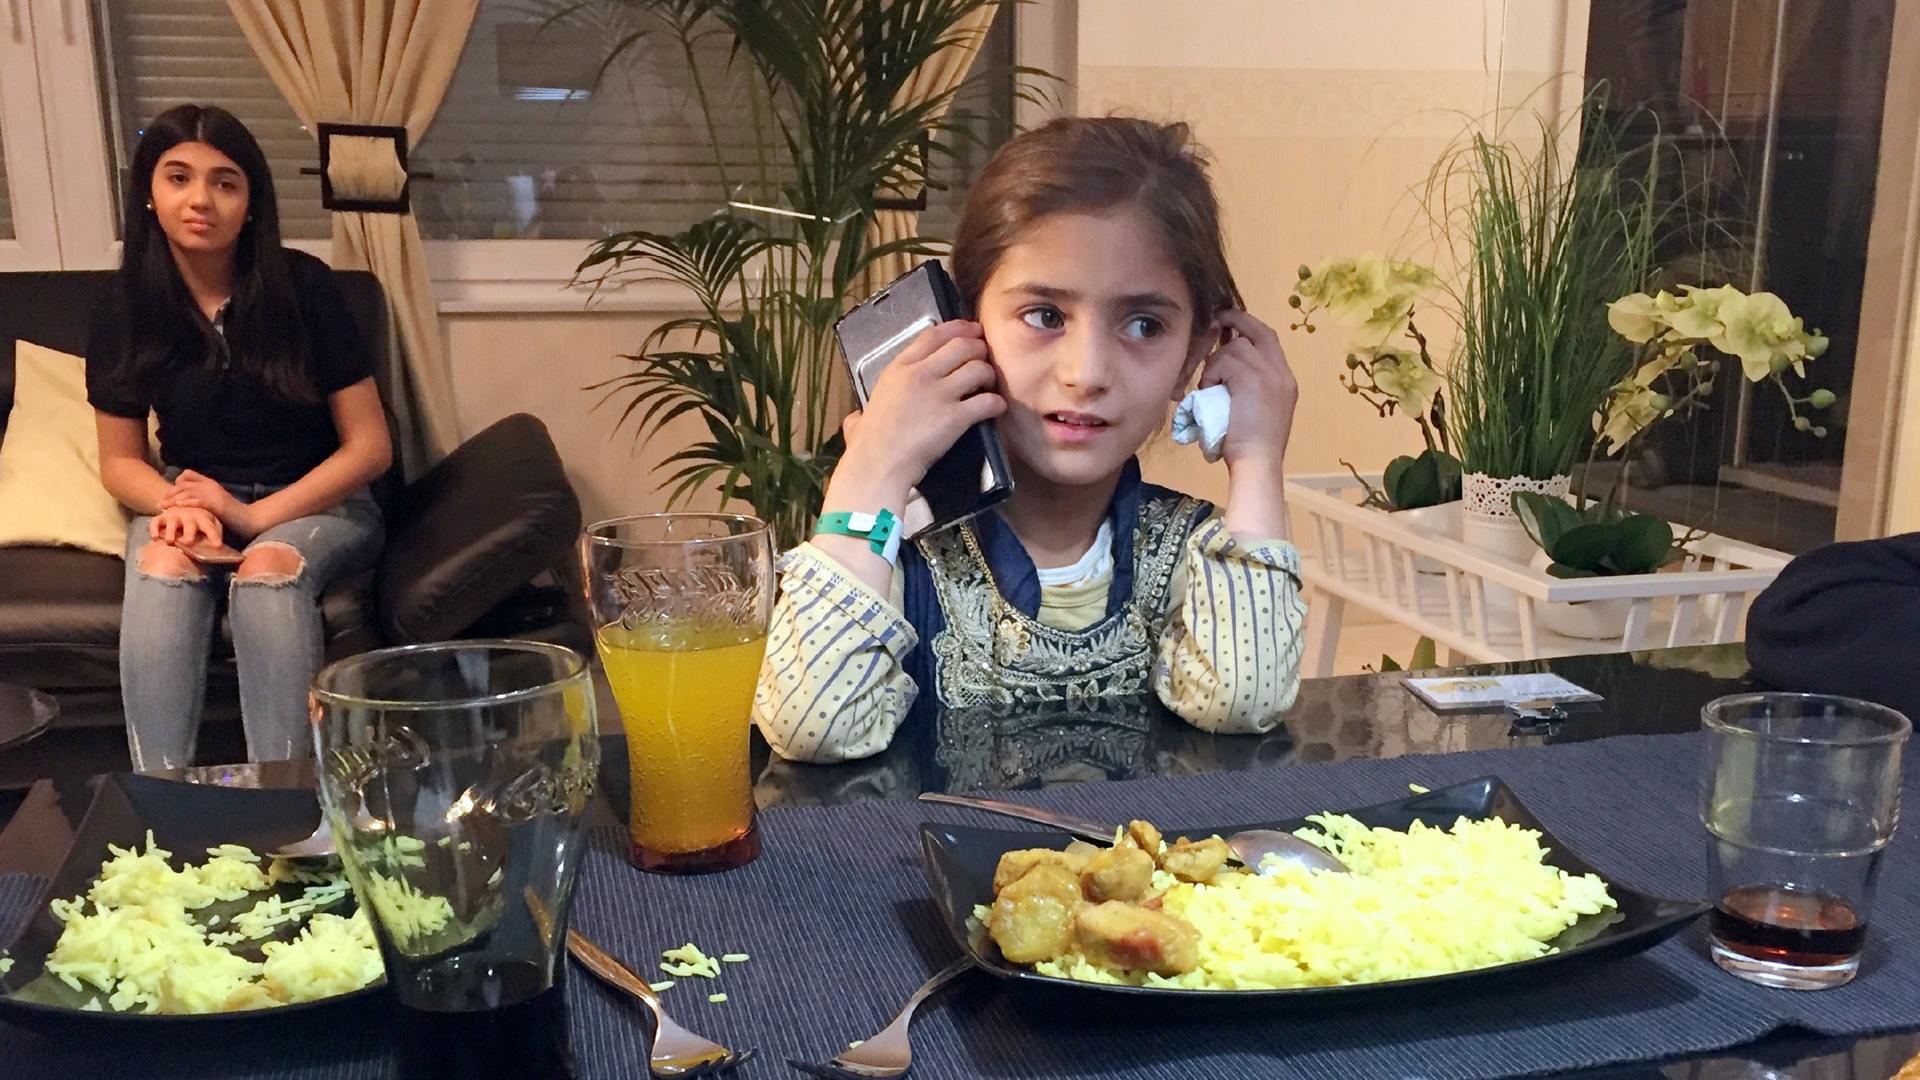 Bei Heimweh hilft manchmal nur die Stimme der Mutter: Die elfjährige Husnia telefoniert bei ihrer Hamburger Gastfamilie nach Afghanistan